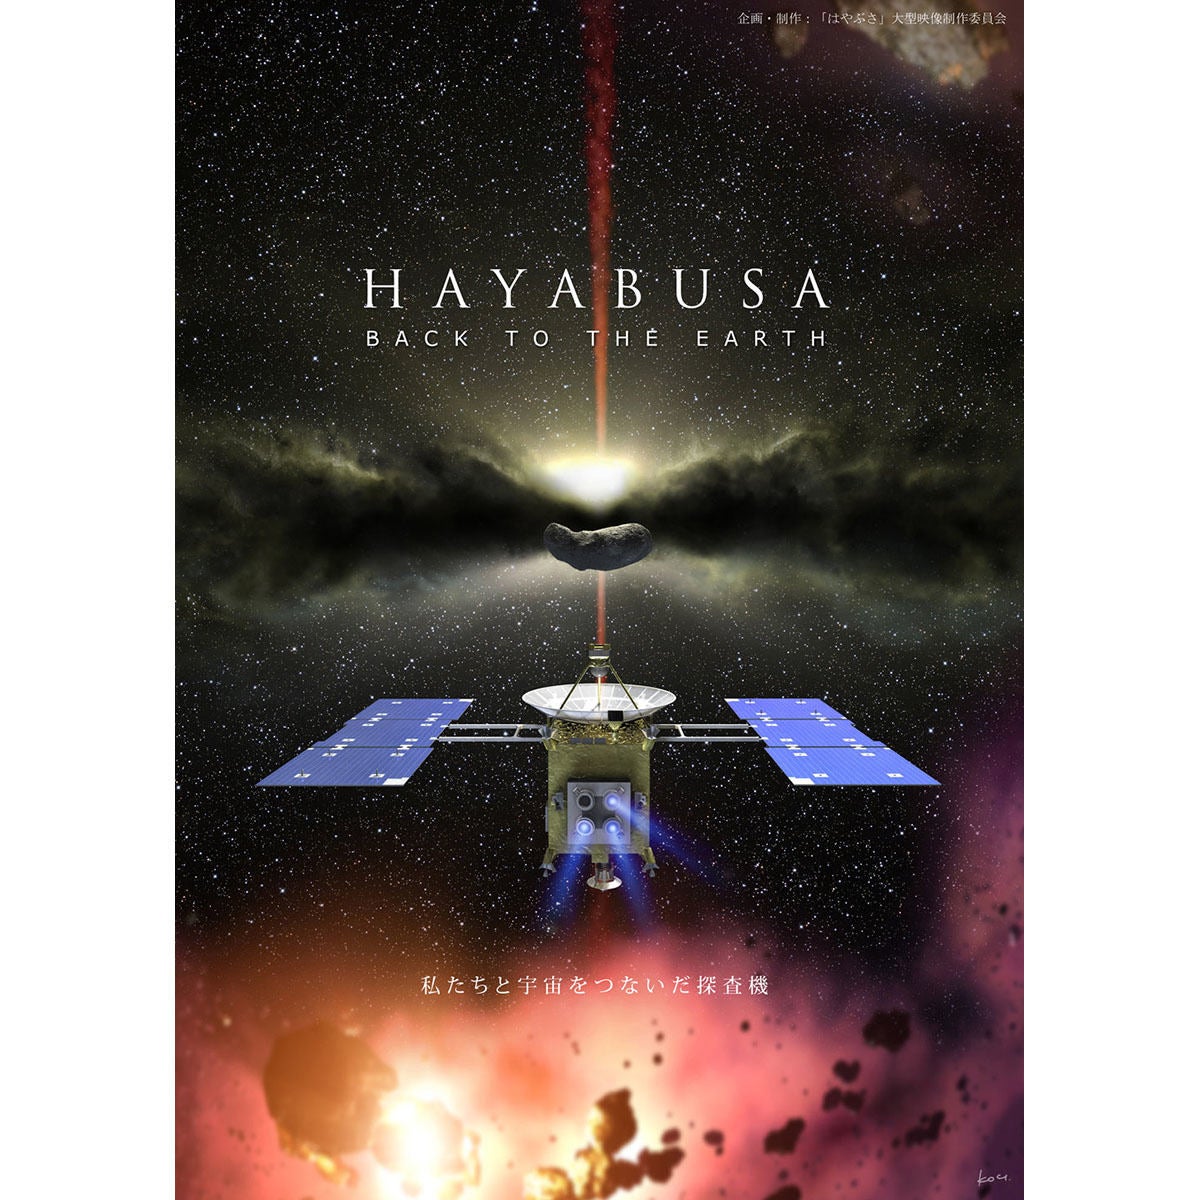 フルcg映像作品 Hayabusa Back To The Earth Youtubeで無償公開